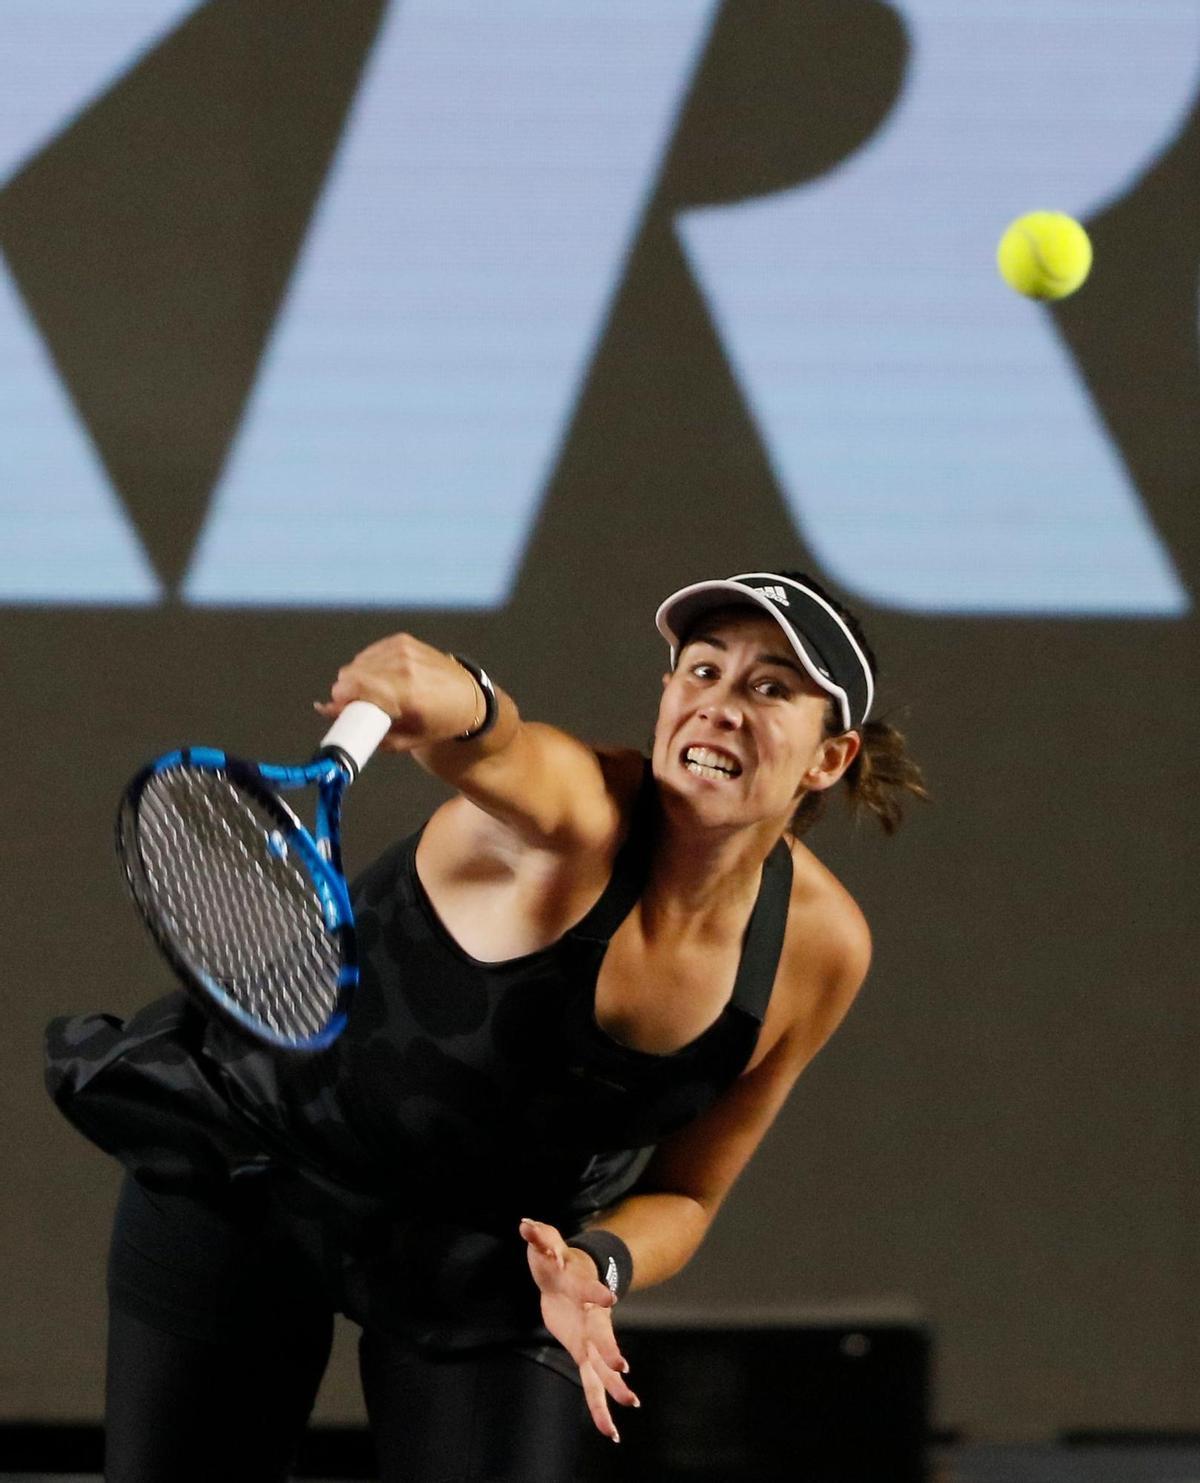 Garbiñe Muguruza, primera española en ganar las WTA Finals